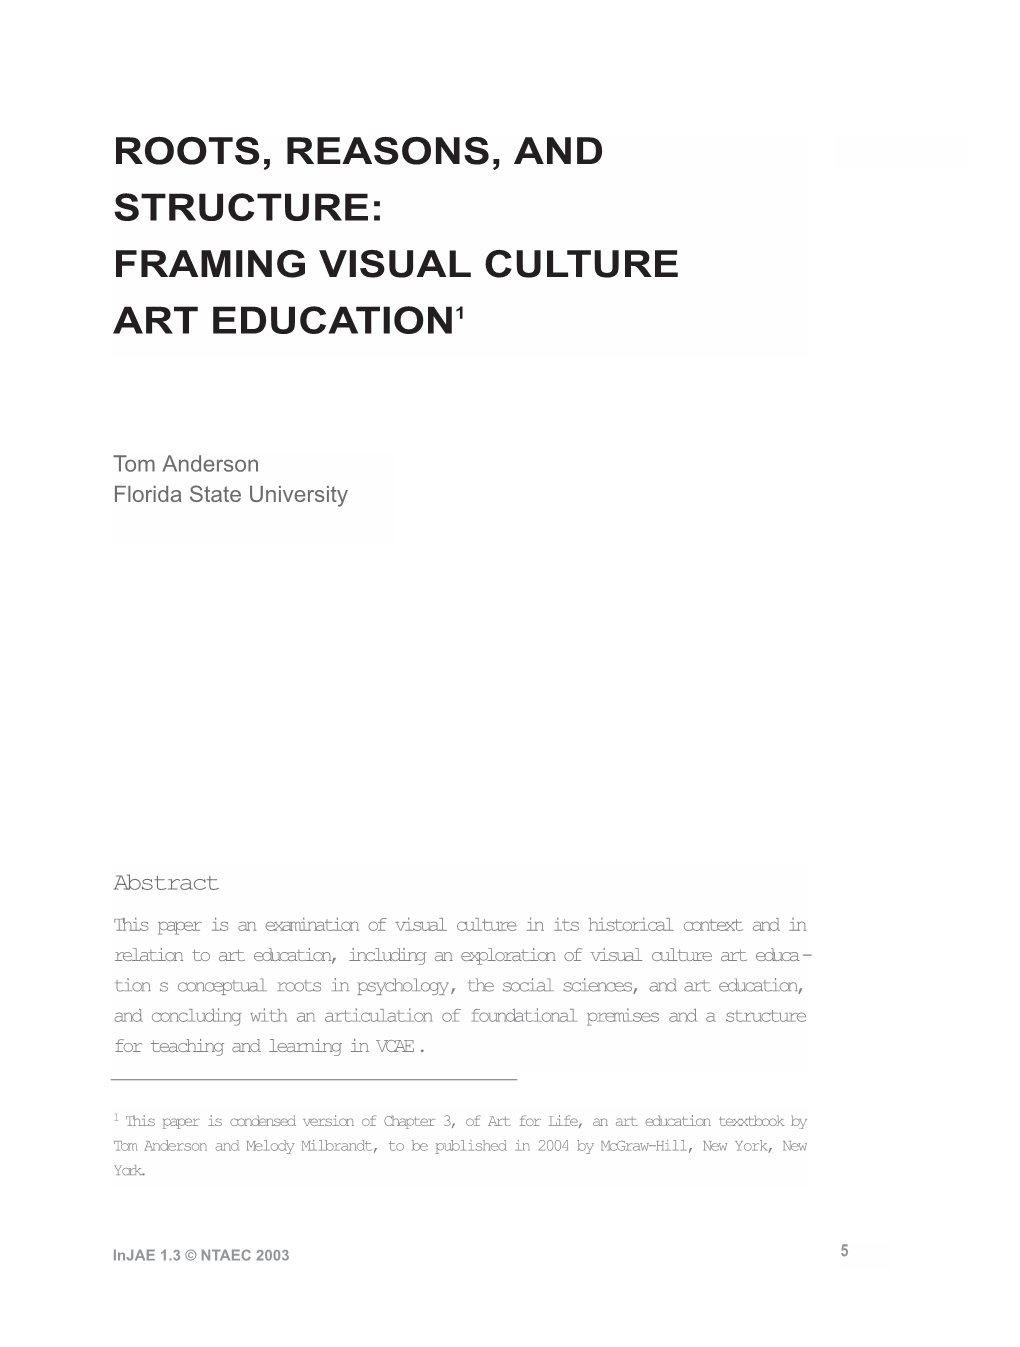 Framing Visual Culture Art Education1